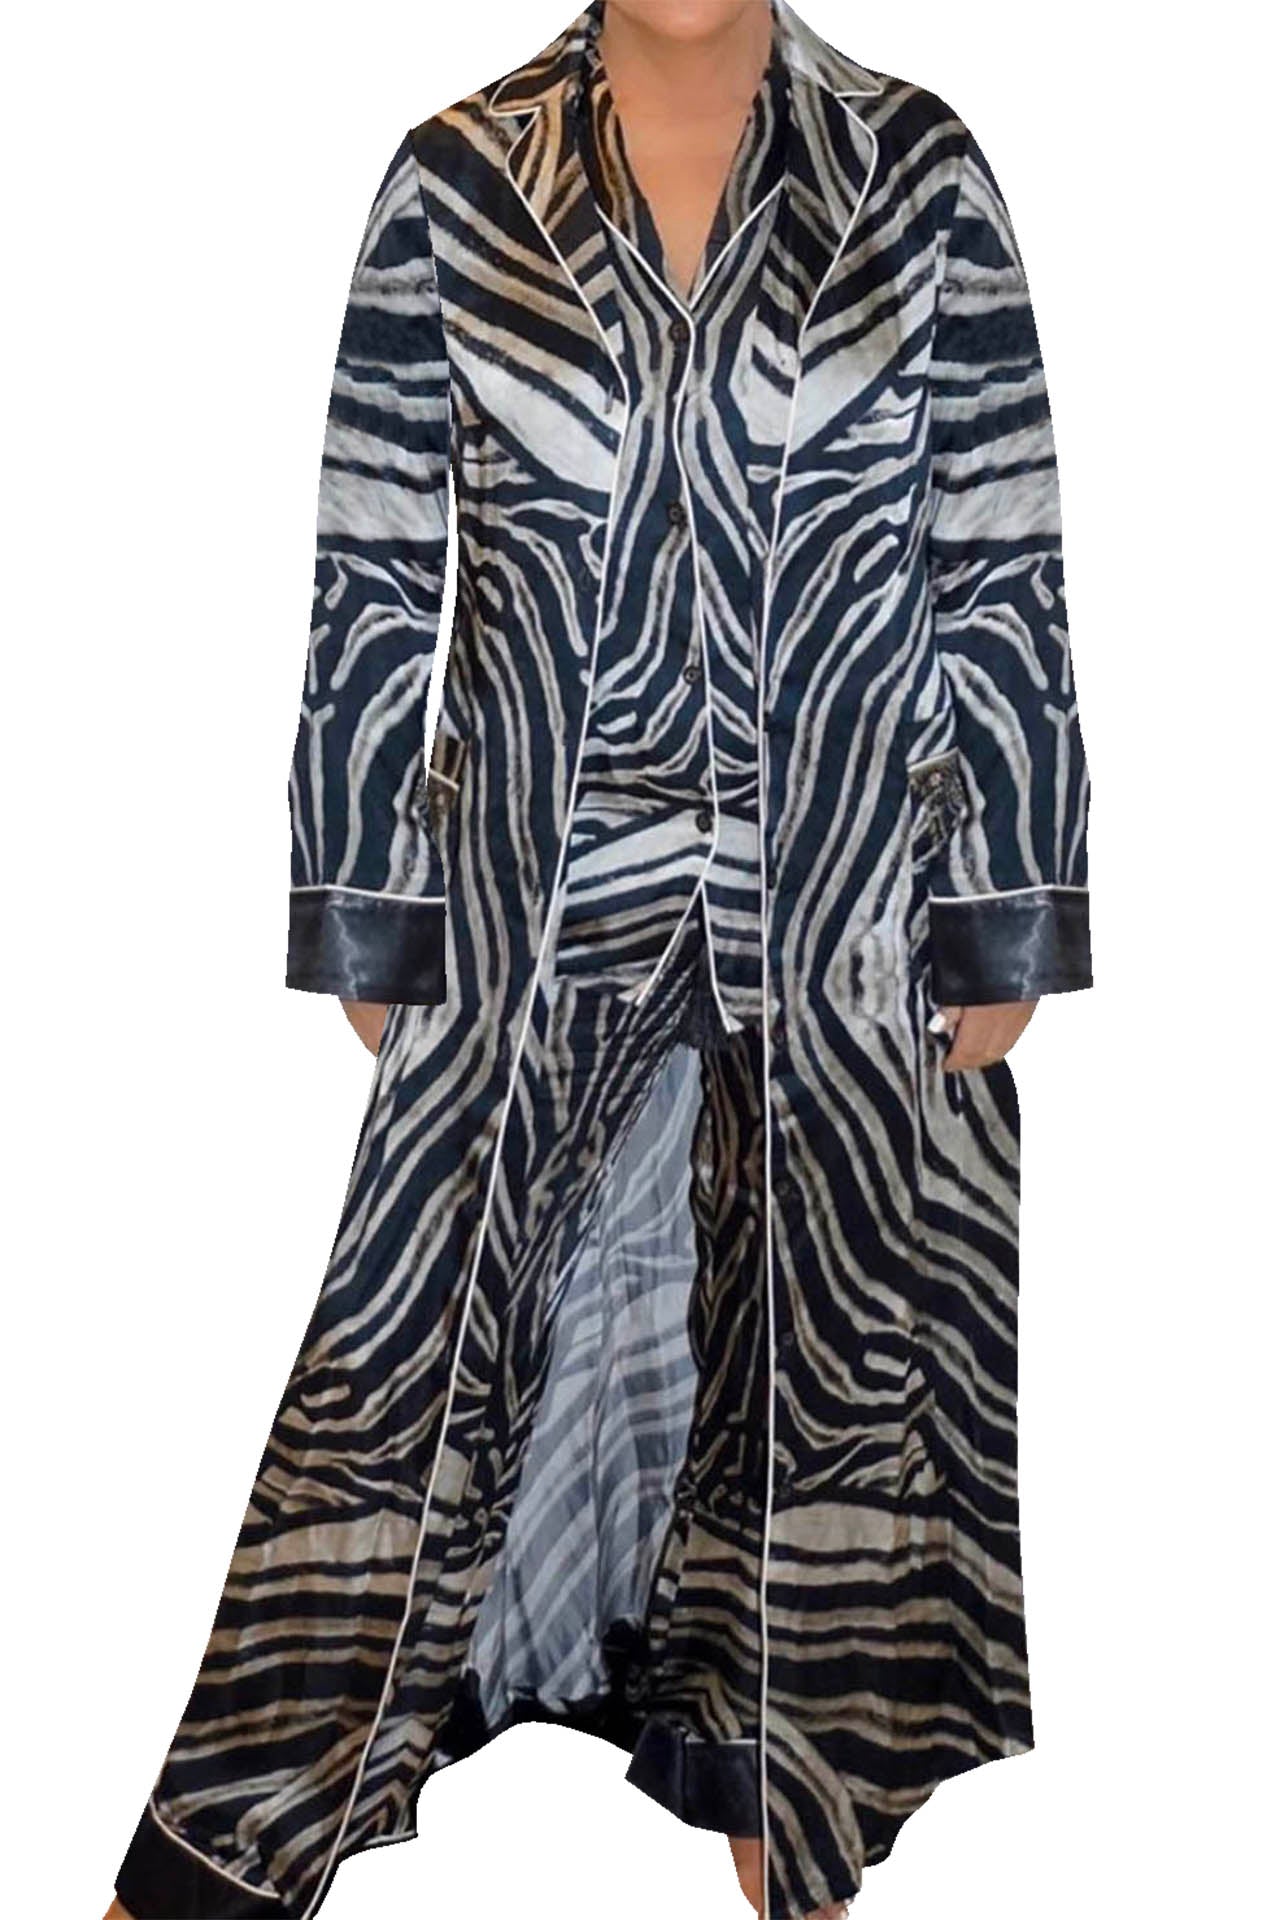 "Kyle X Shahida" "long down coat womens" "womens long dress coat" "long zebra print coat"